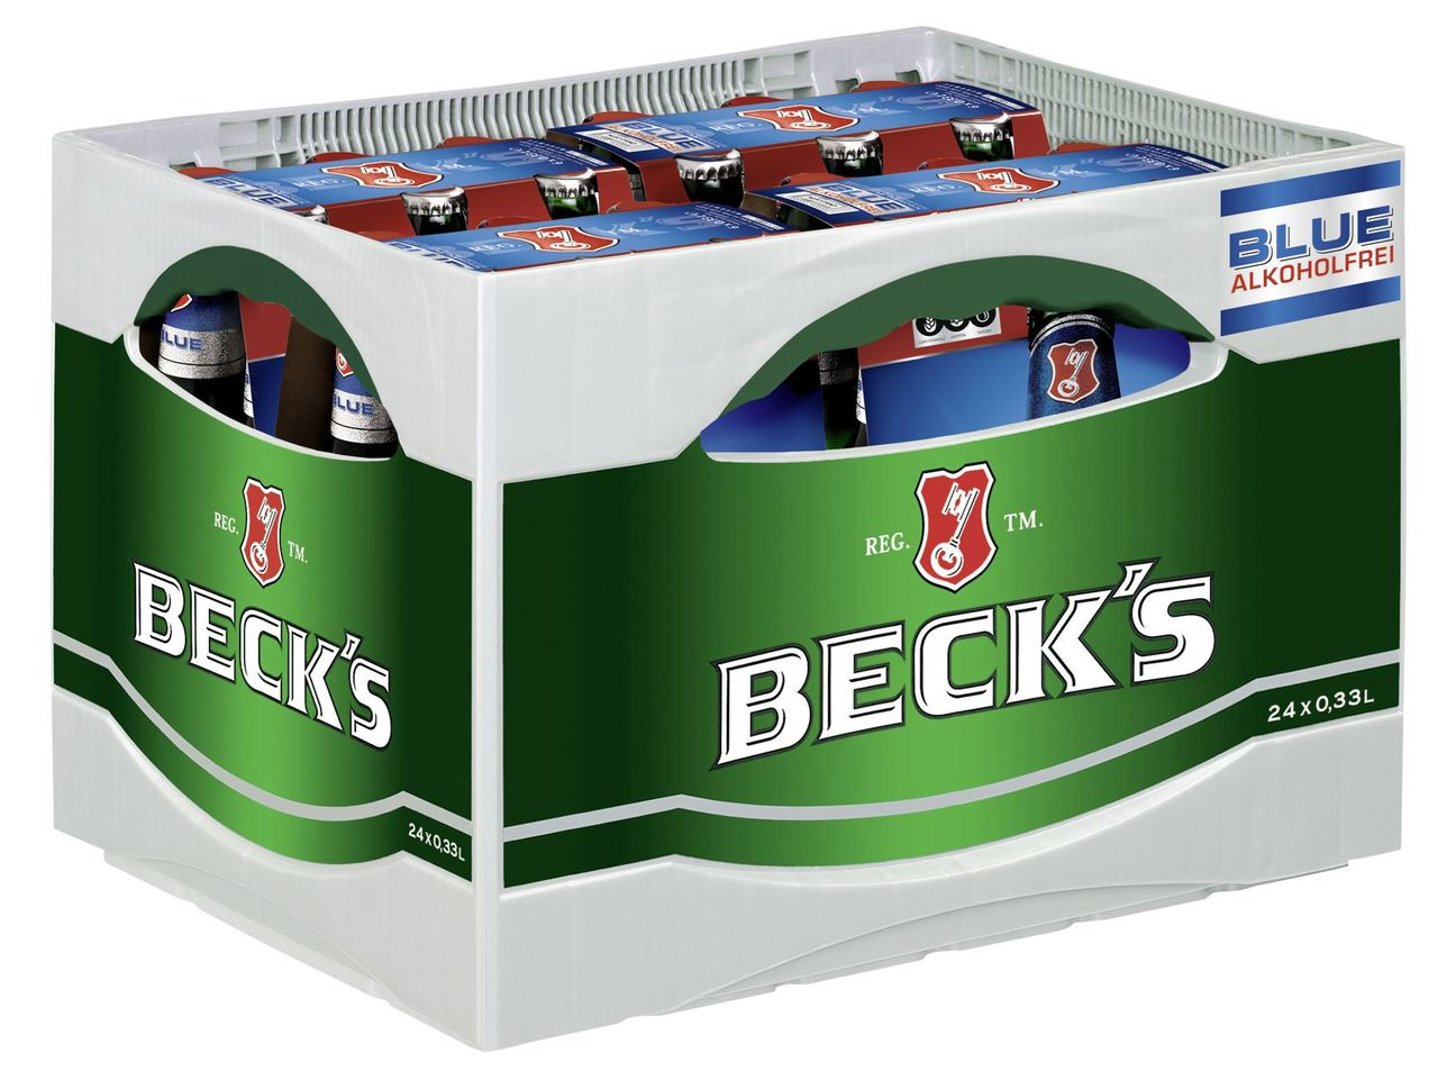 Beck's Blue alkoholfrei Glas - 24 x 0,33 l Flaschen im Six-Pack